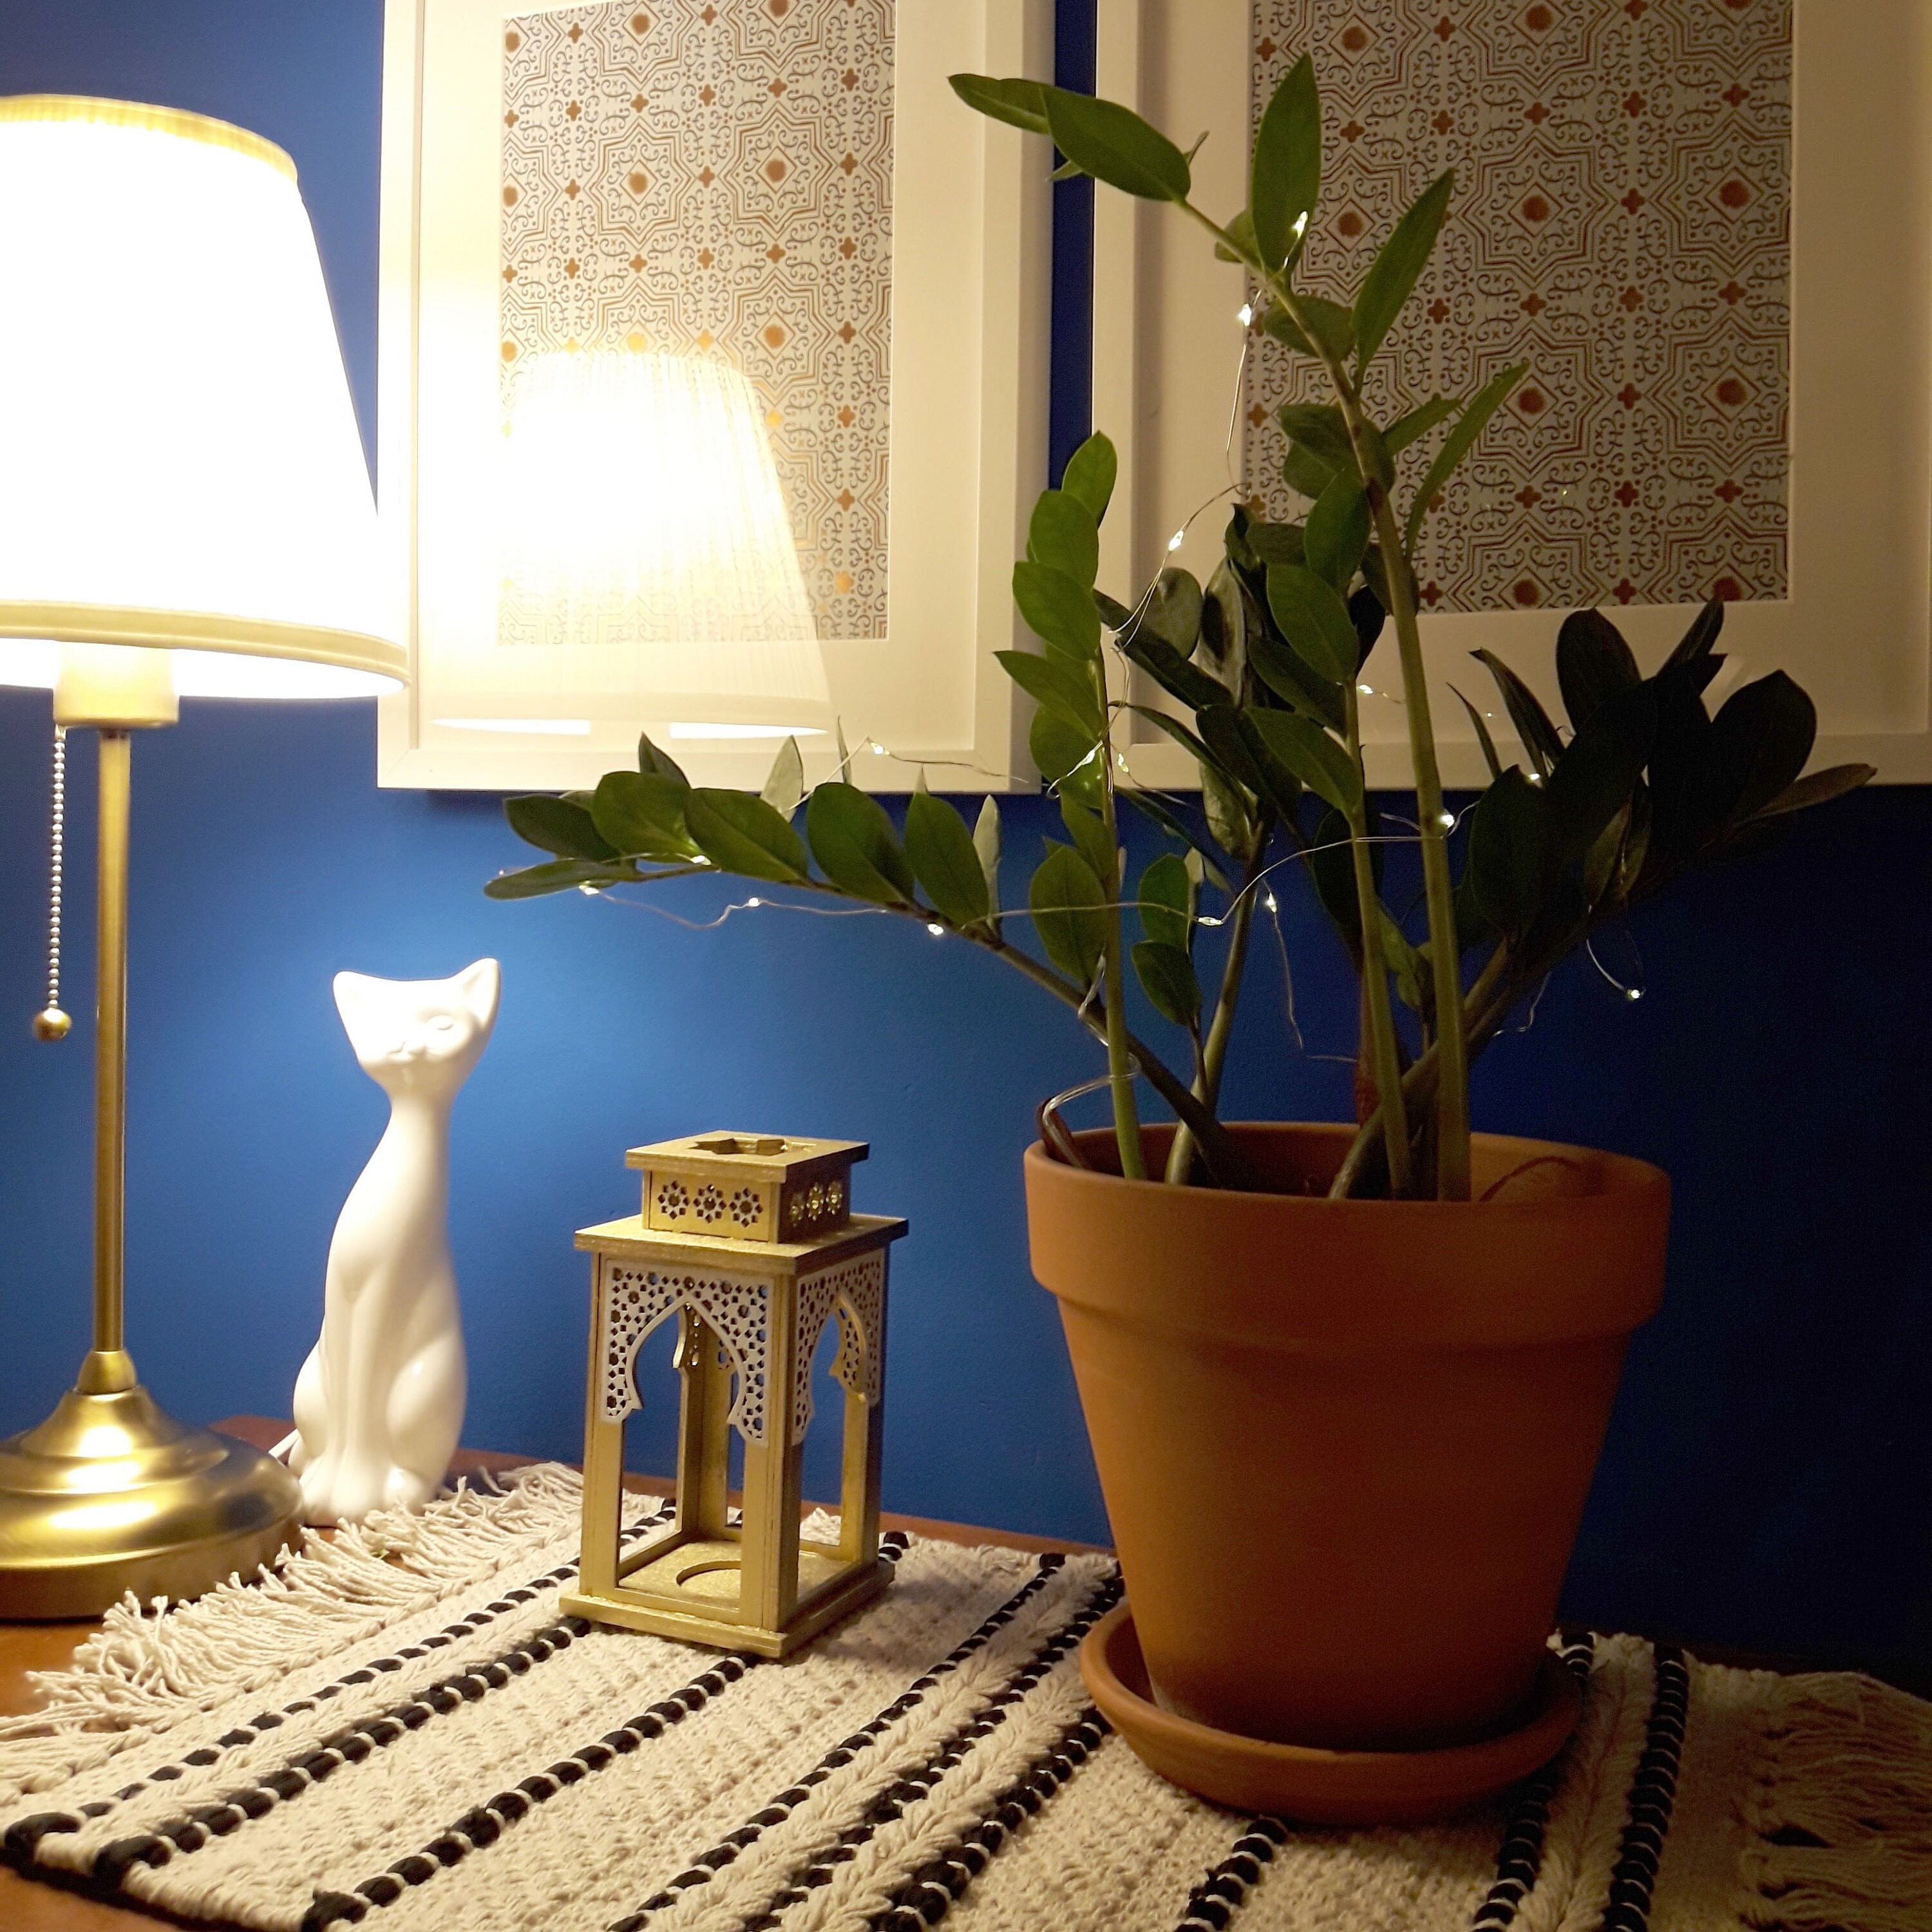 Marokko Stil Teelichthalter Laterne Dekorative Garten Landschaft beleuchtung 